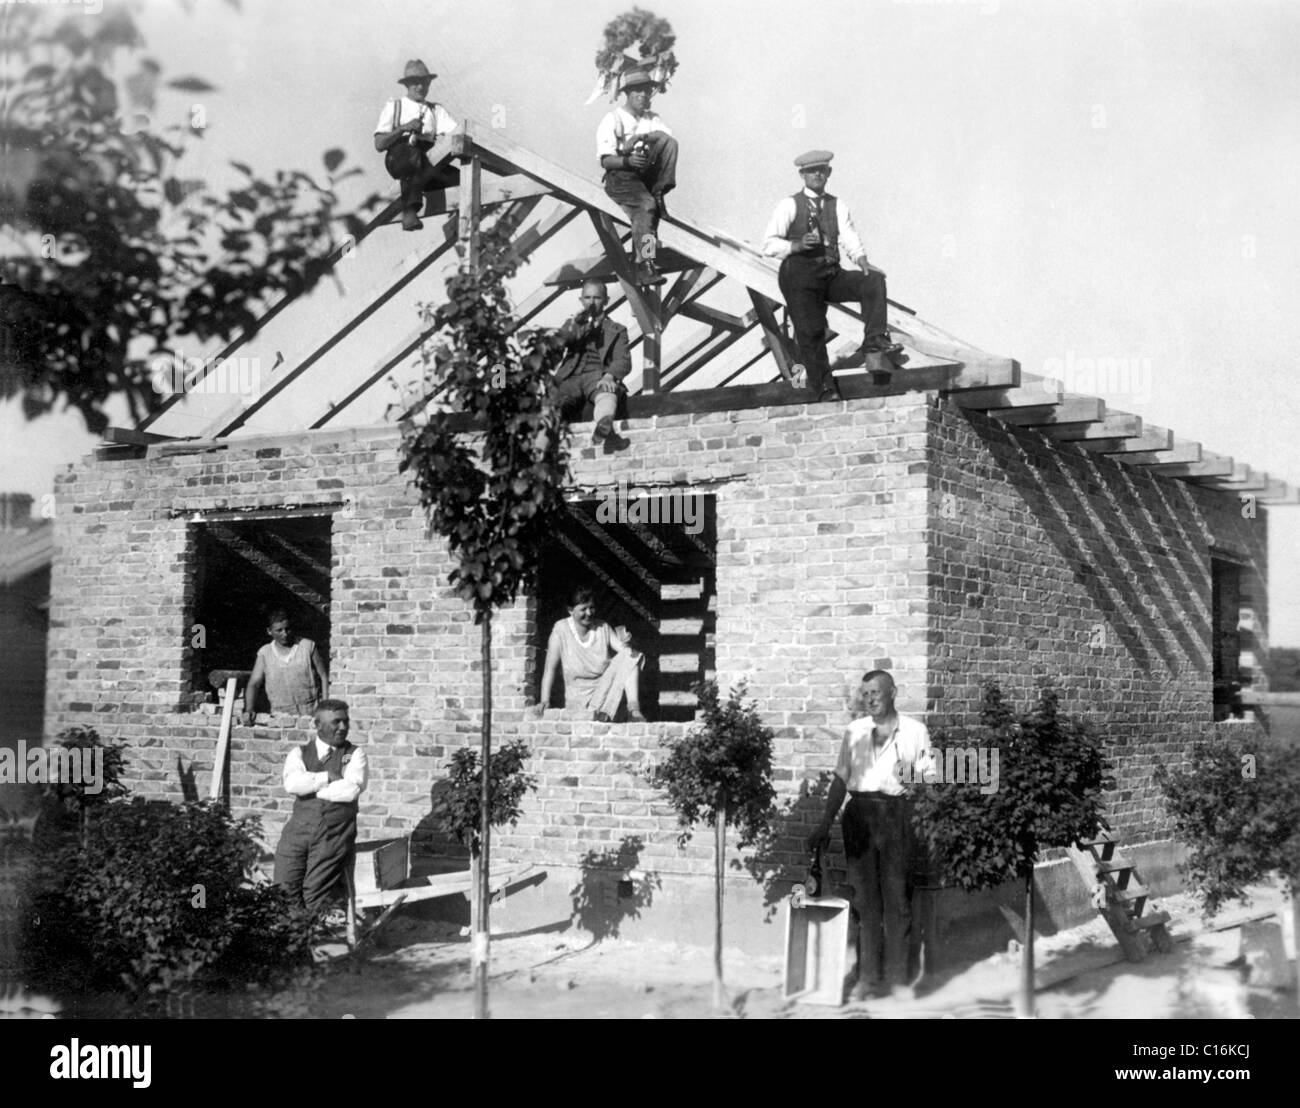 Photographie historique, cérémonie de la toiture dans les années 30 Banque D'Images